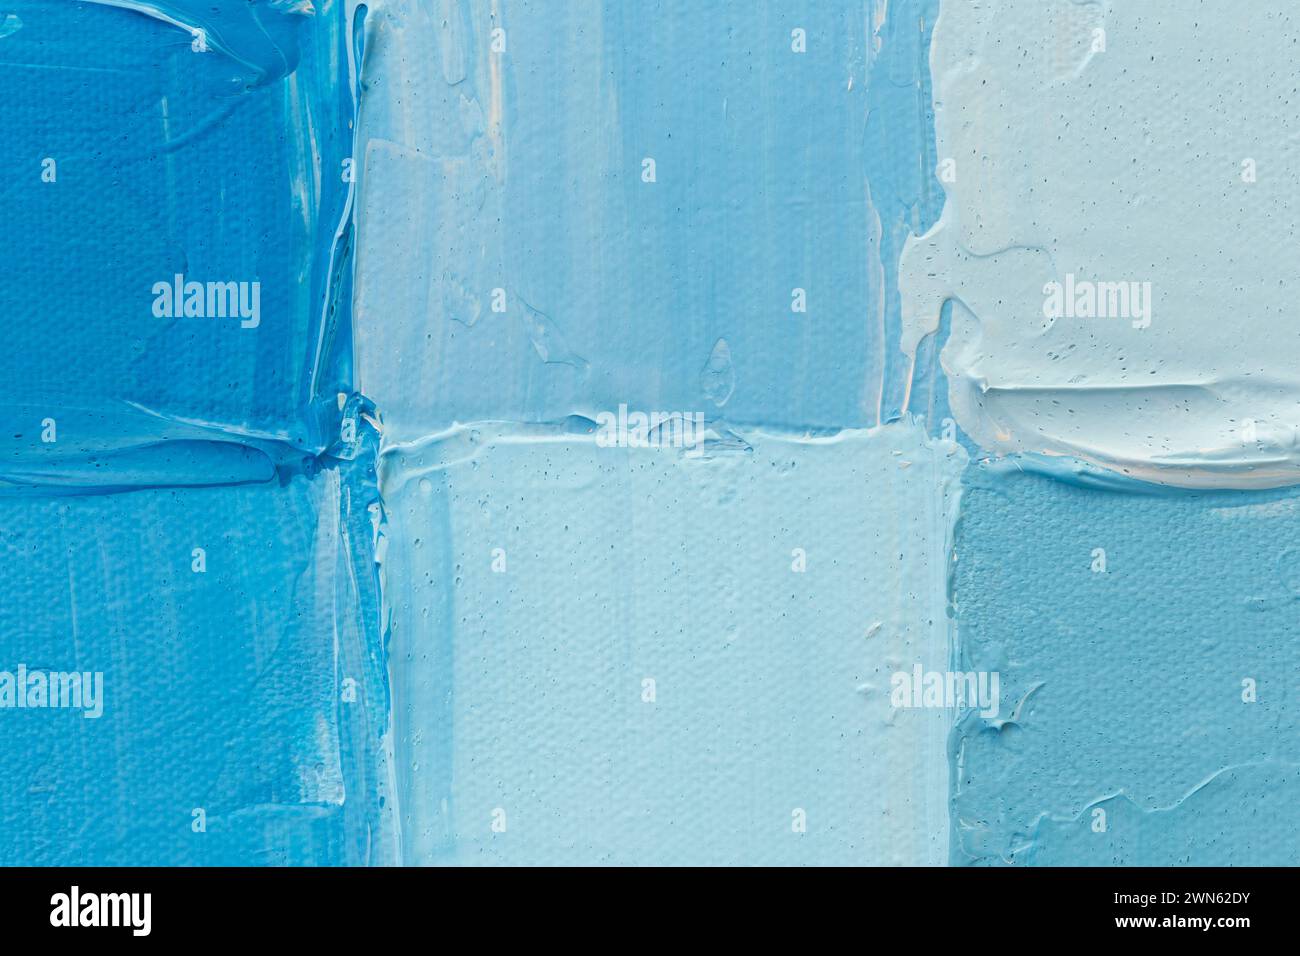 Makroaufnahme von mit Acrylfarbe bemalten Quadraten in hellblauen und türkisfarbenen Tönen. Hochauflösender, texturierter Leinwandhintergrund, Kopierraum Stockfoto